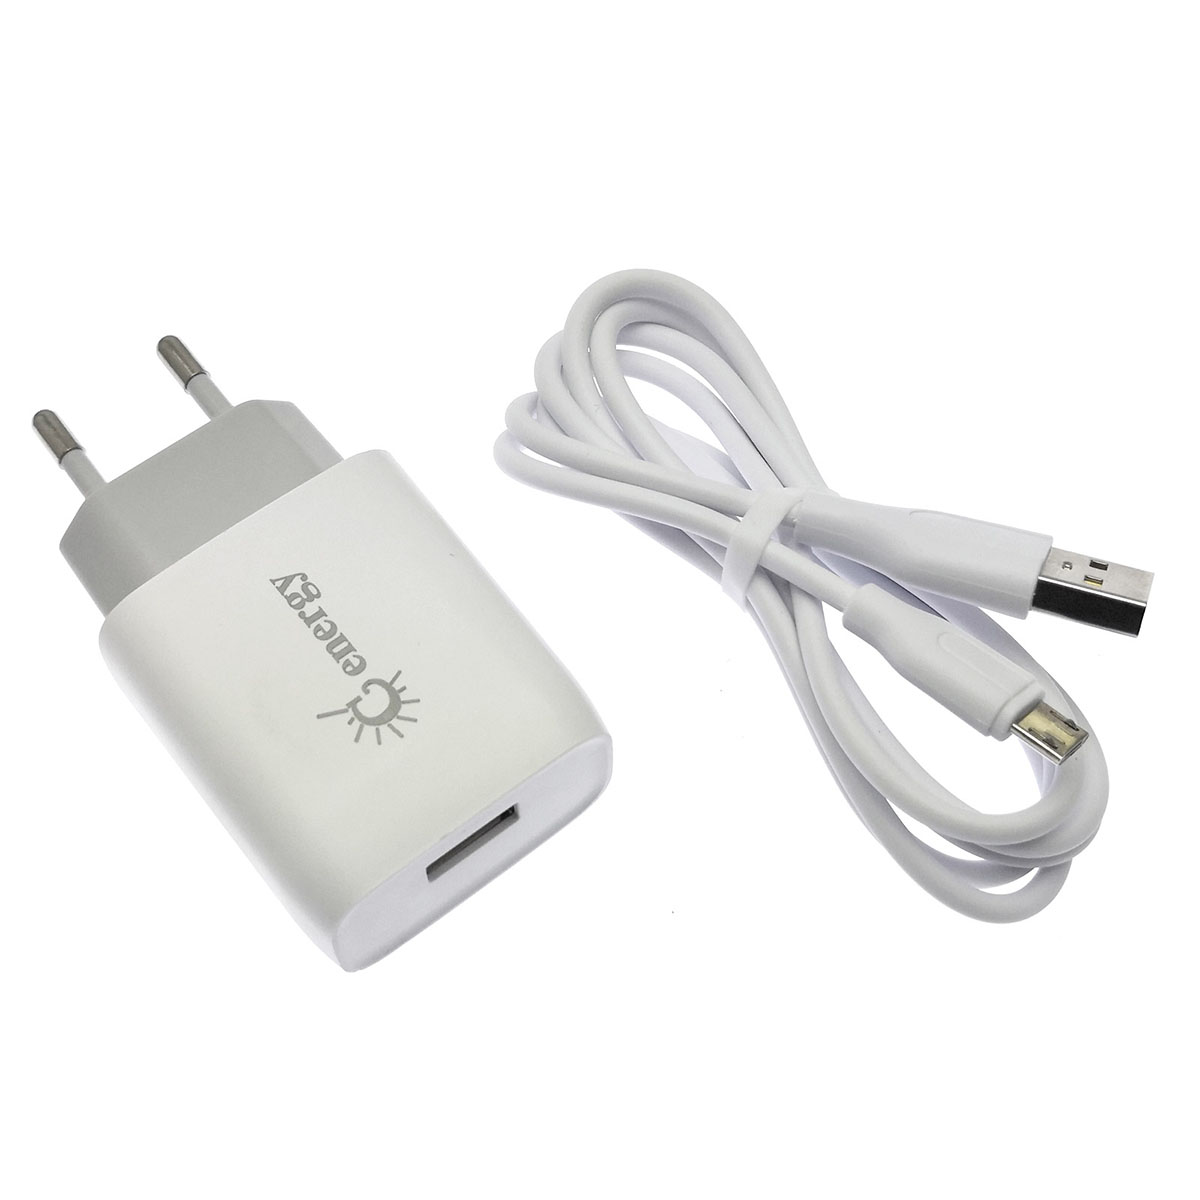 СЗУ (сетевое зарядное устройство) с кабелем Micro USB, GENERGY eh-16, 5V-2A, длина 1 метр, цвет белый